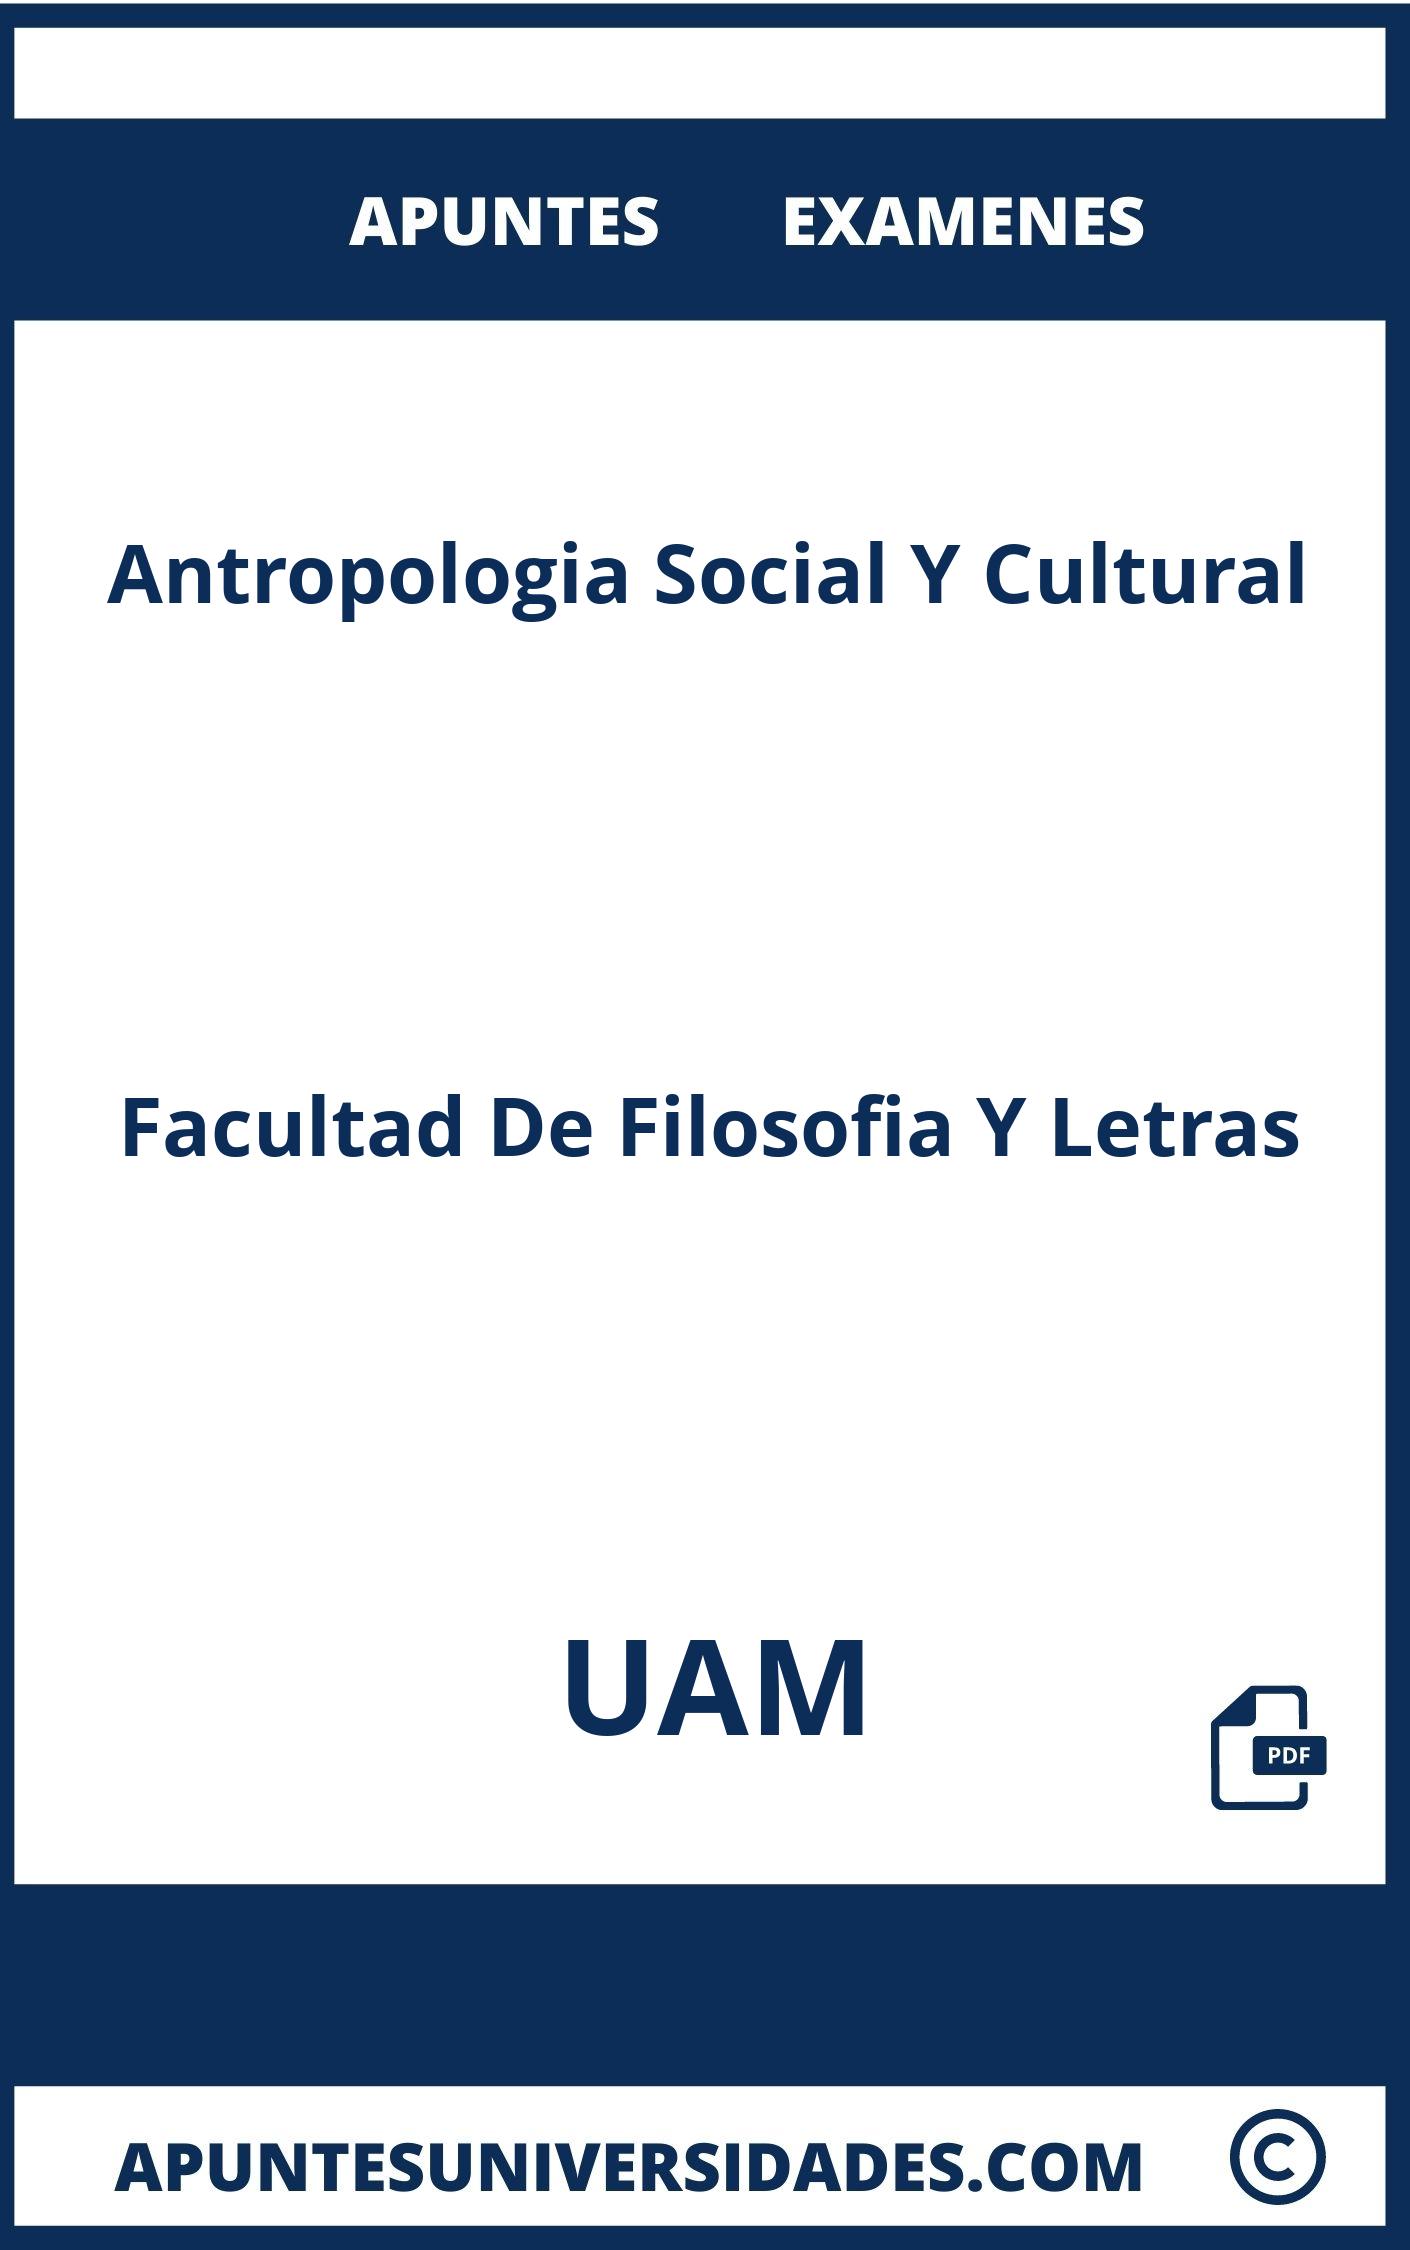 Apuntes Antropologia Social Y Cultural UAM y Examenes